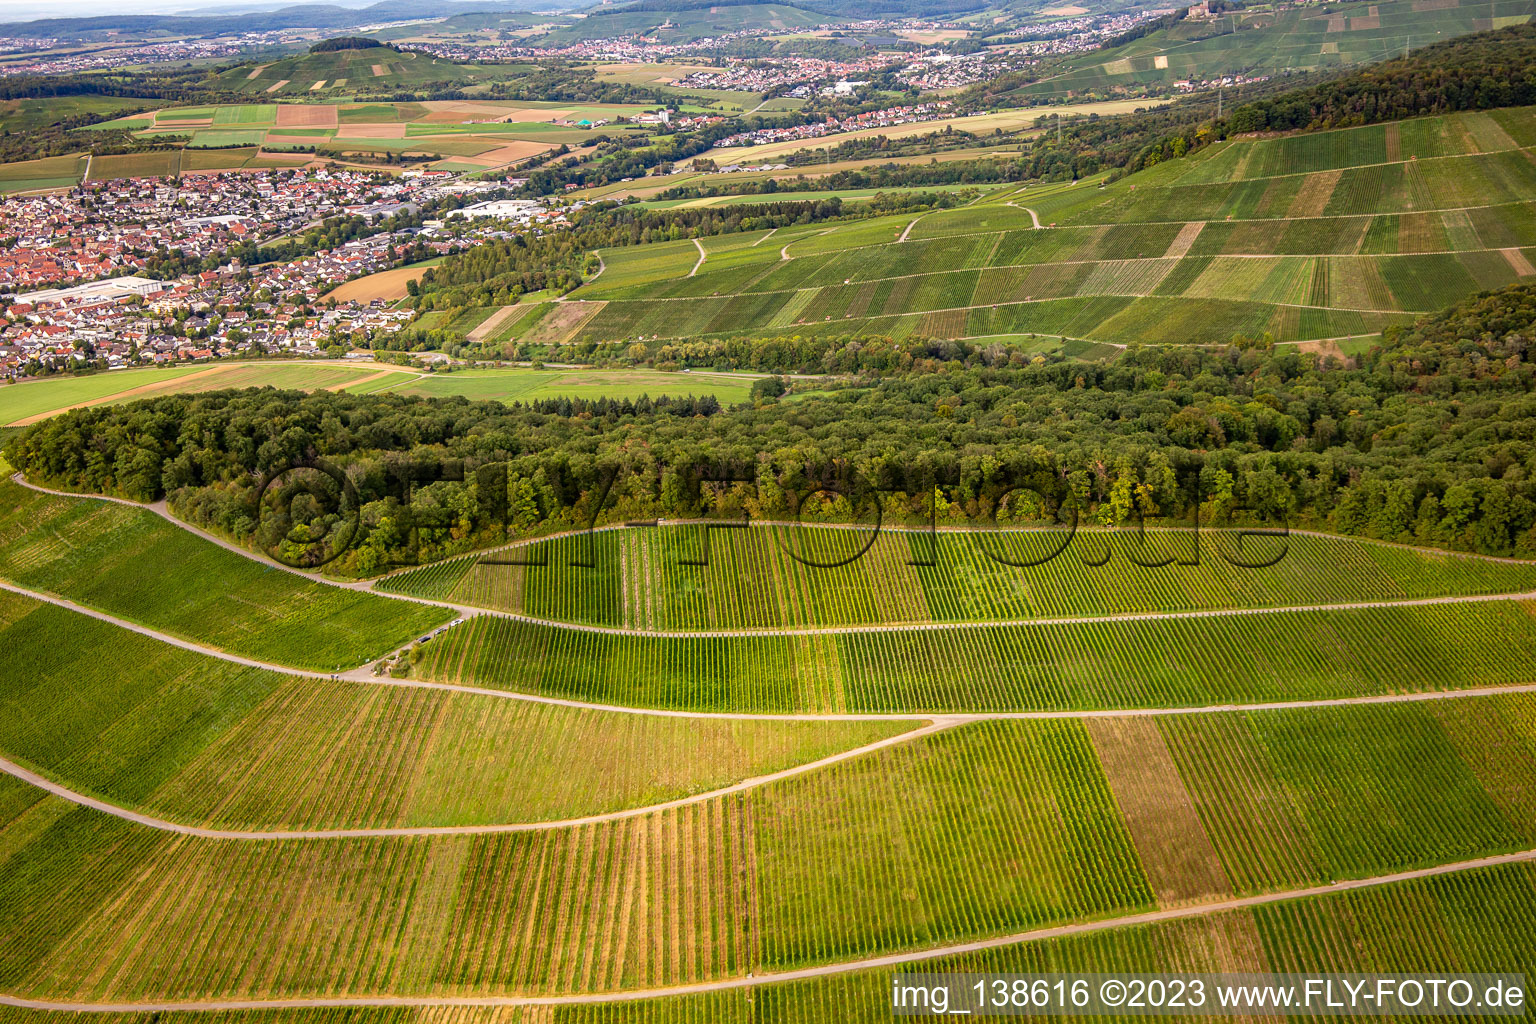 Aerial photograpy of Großbottwar vineyard in the district Kleinbottwar in Steinheim an der Murr in the state Baden-Wuerttemberg, Germany